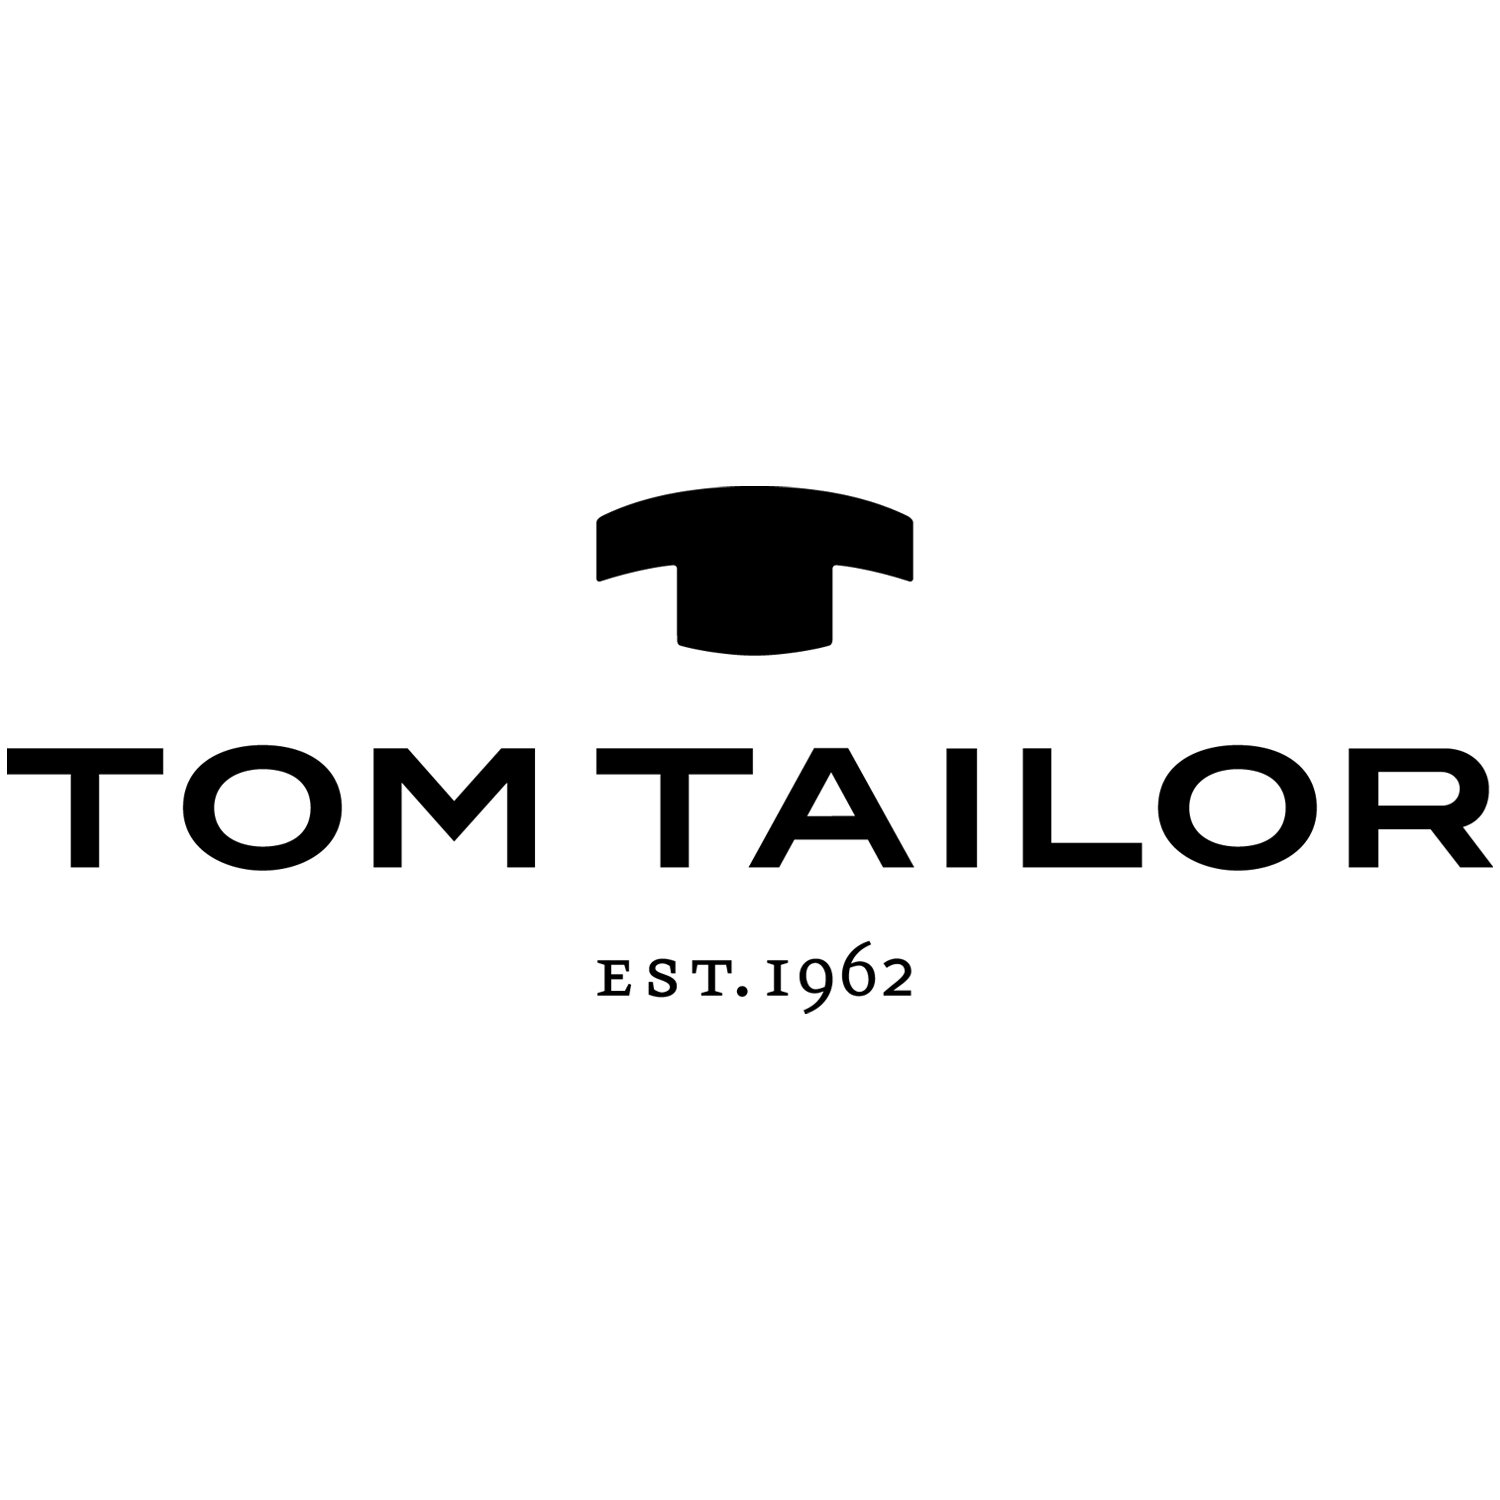 Tom Tailor.jpg